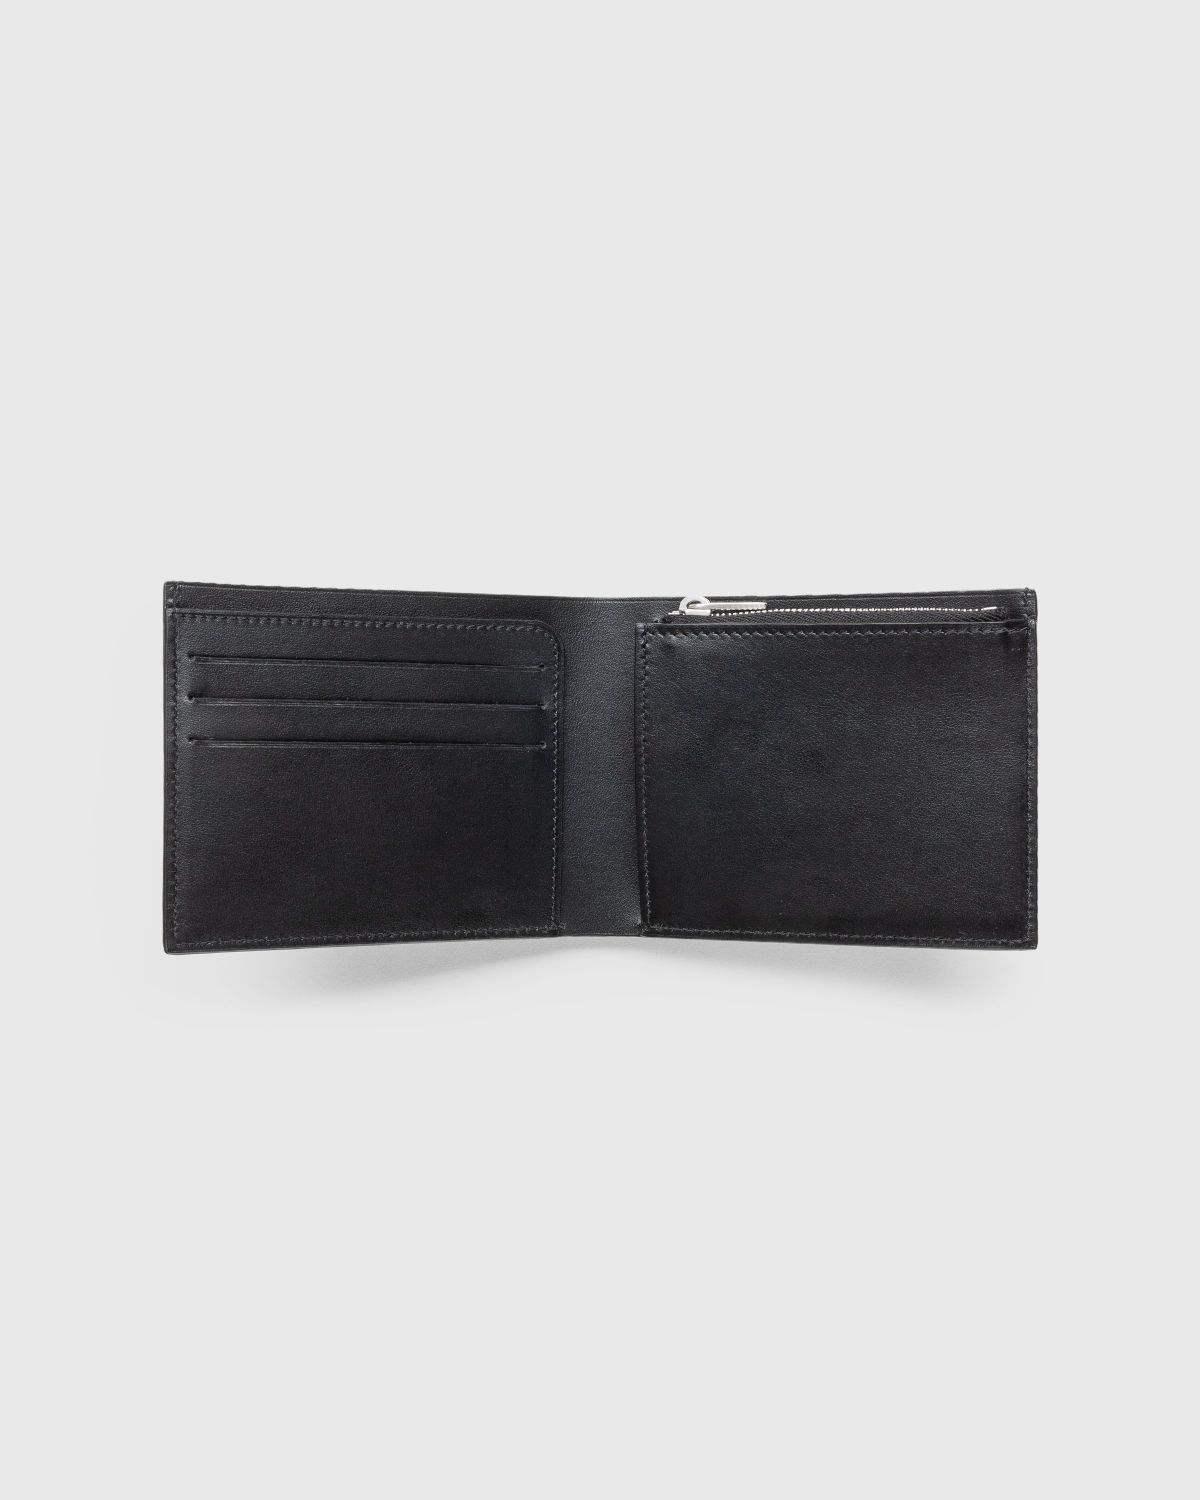 Jil Sander – Zip Pocket Wallet Black - Wallets - Black - Image 3